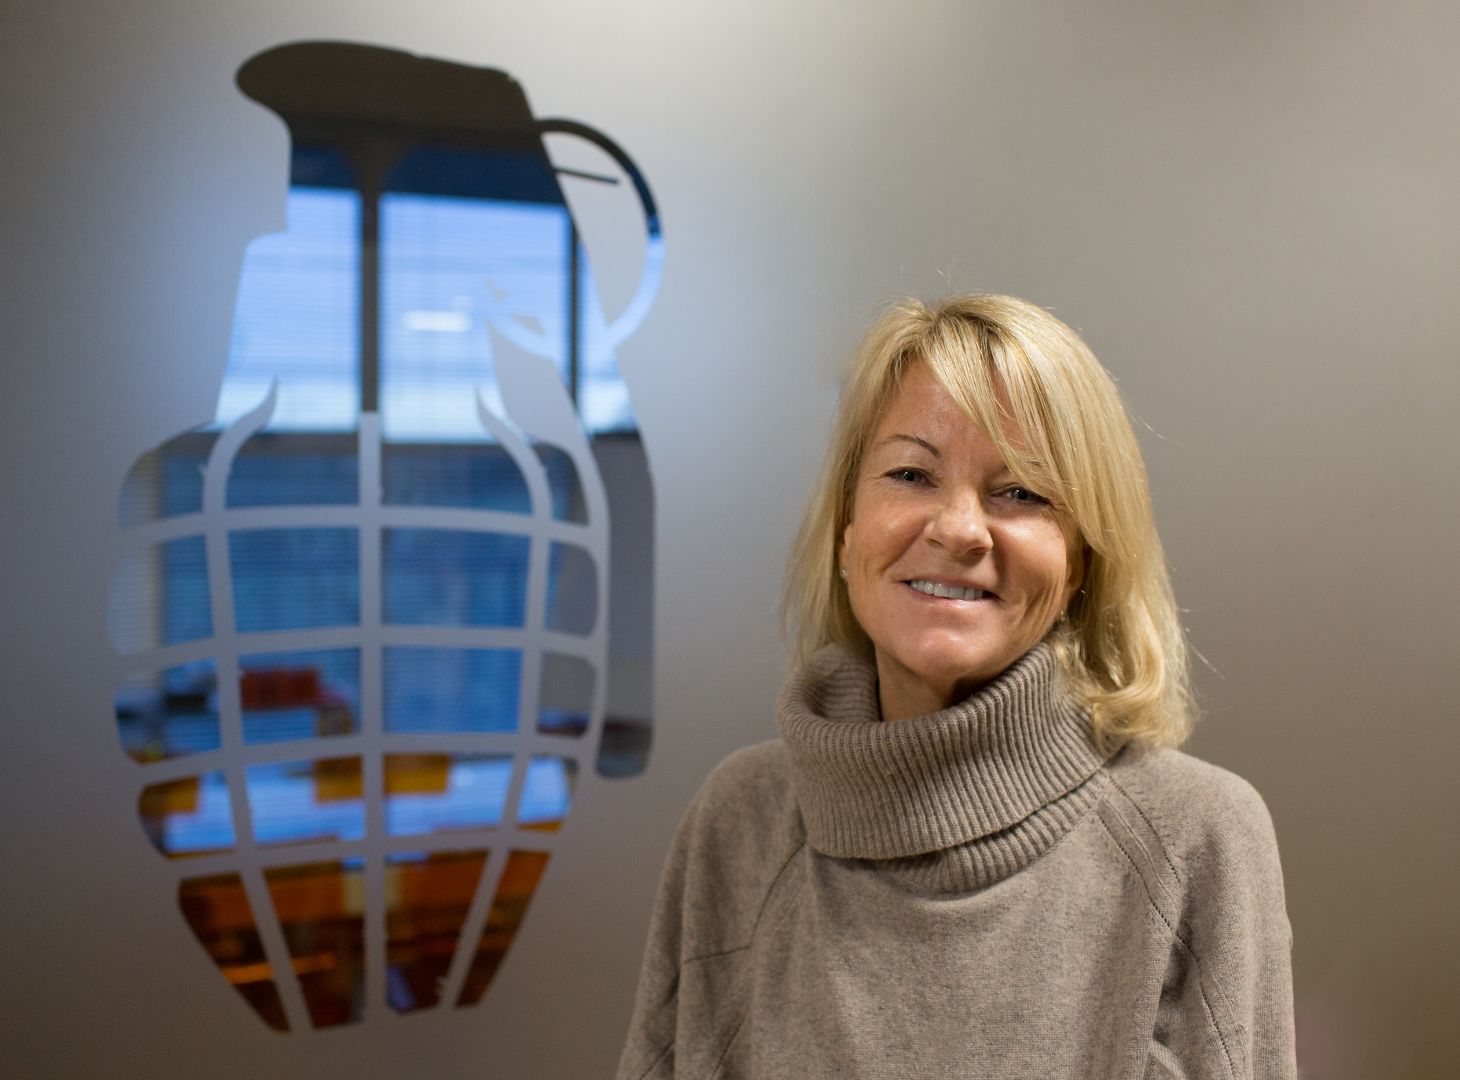 Image of Juliet Barratt, Co-Founder of Grenade stood next to Grenade Logo